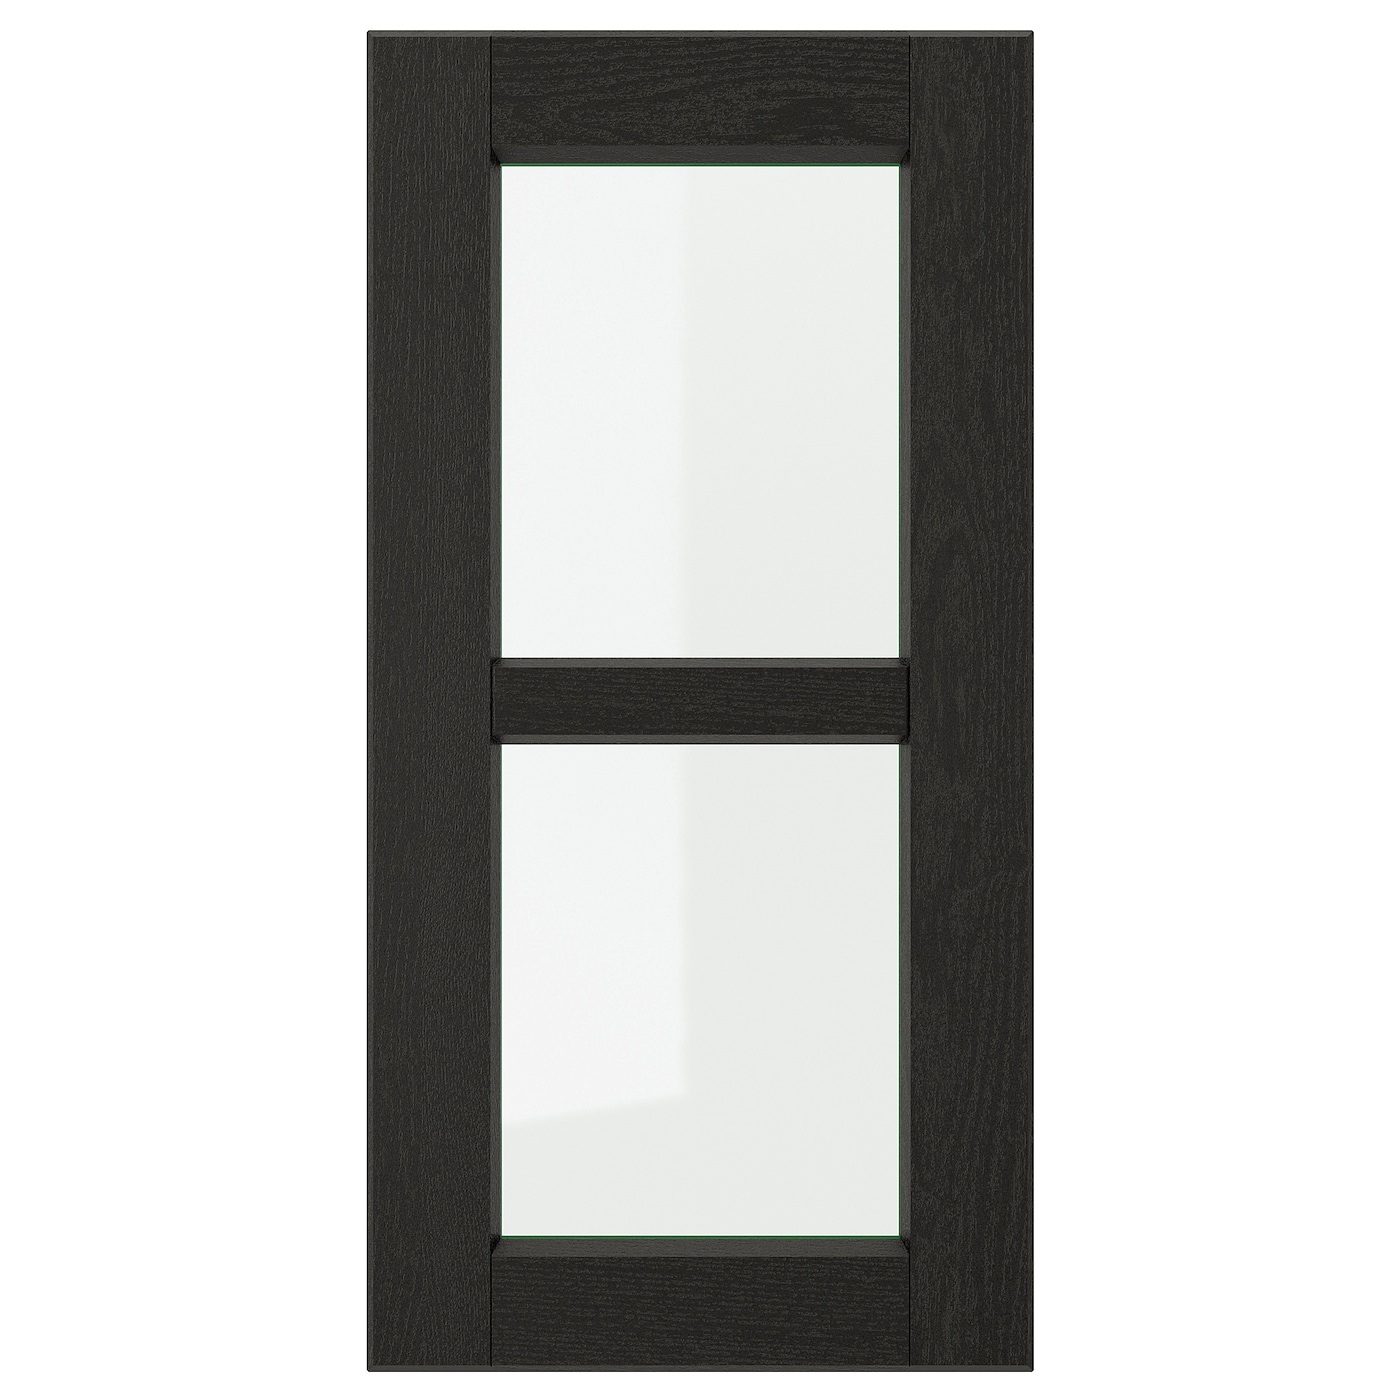 Дверца со стеклом - IKEA LERHYTTAN, 60х30 см, черный, ЛЕРХЮТТАН ИКЕА